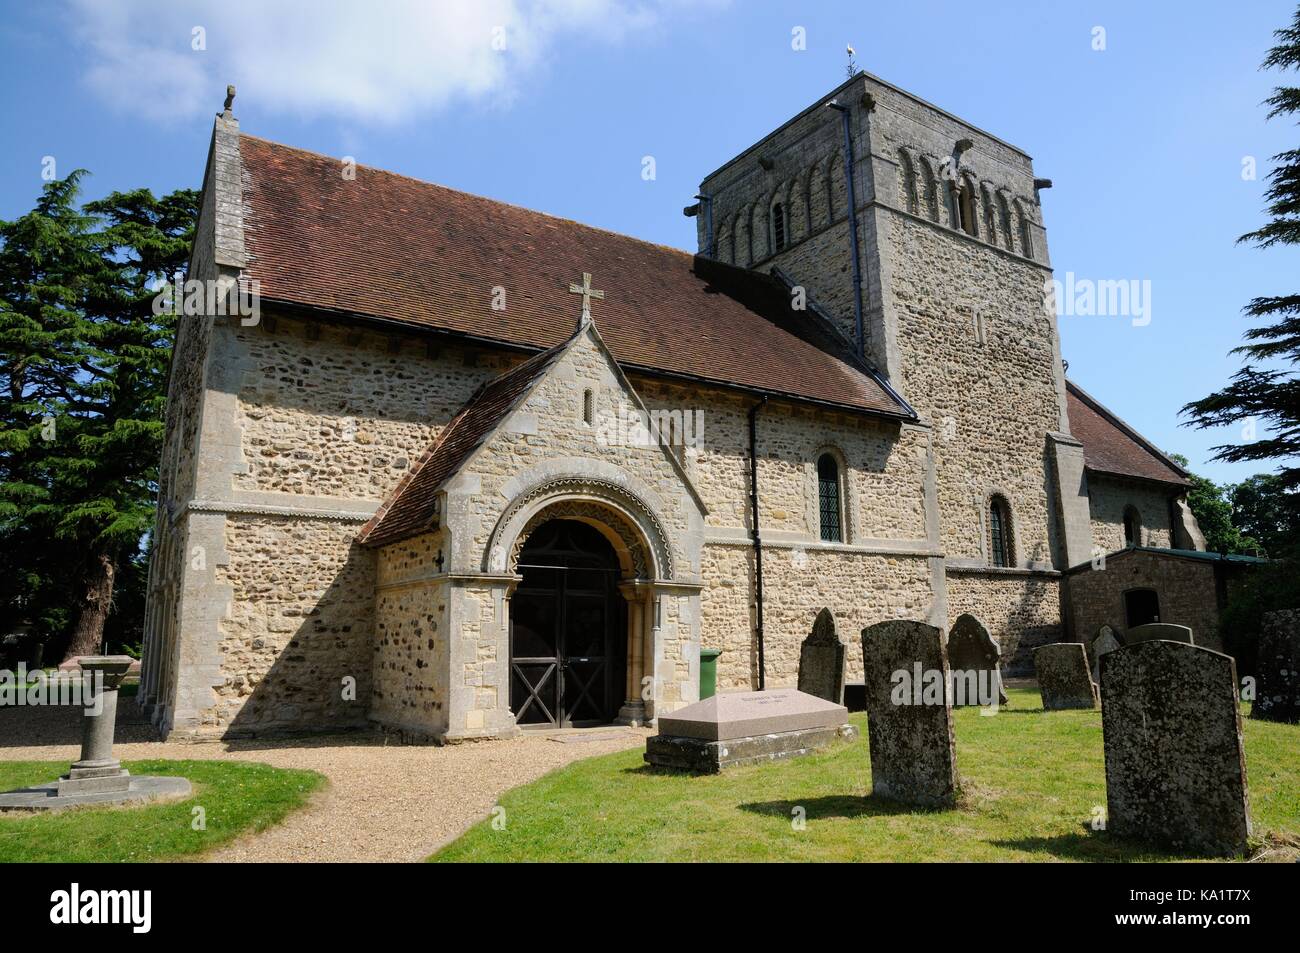 St Michael's Church, Stewkley, Buckinghamshire, ist als eines der schönsten Normannischen Gebäuden des Landes angesehen. Stockfoto